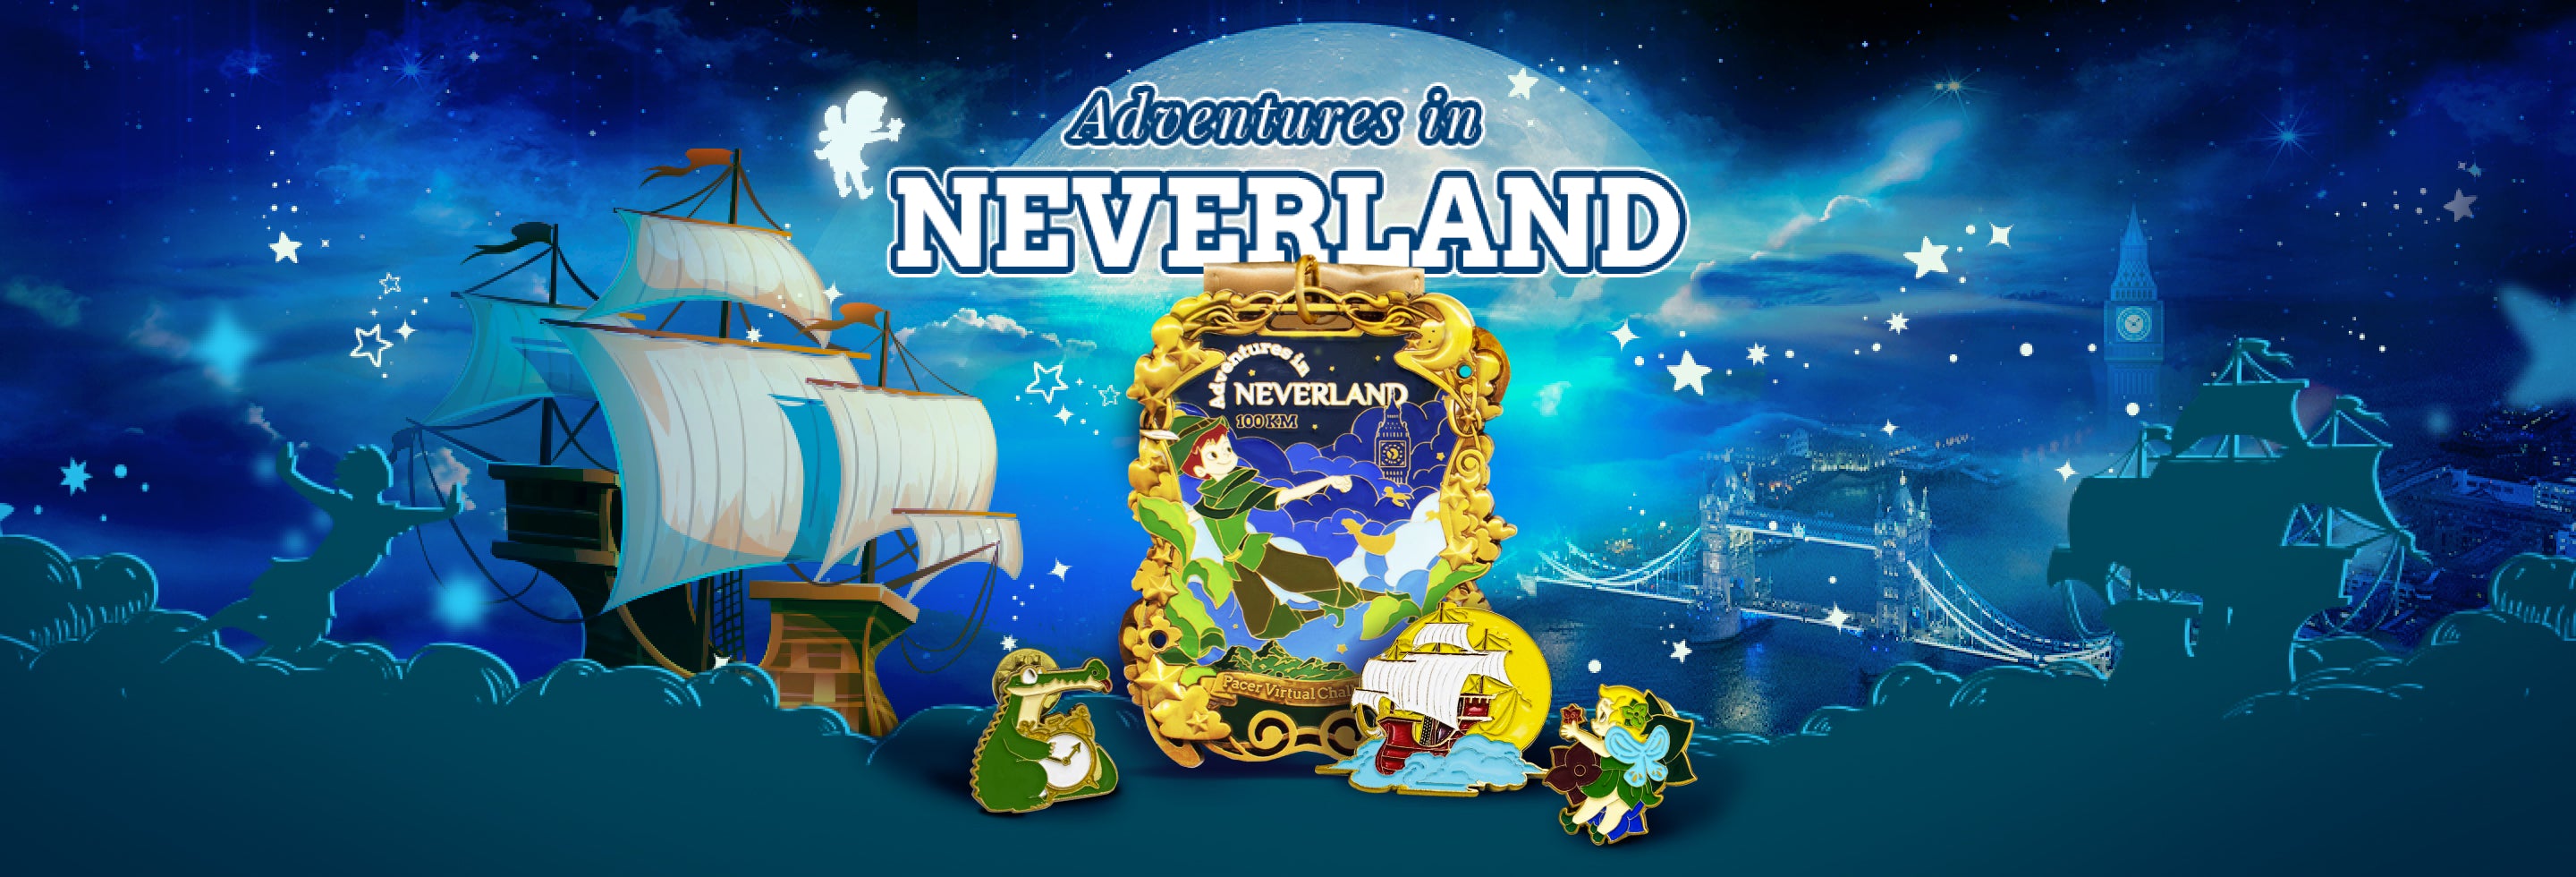 Adventures in Neverland - 100 km